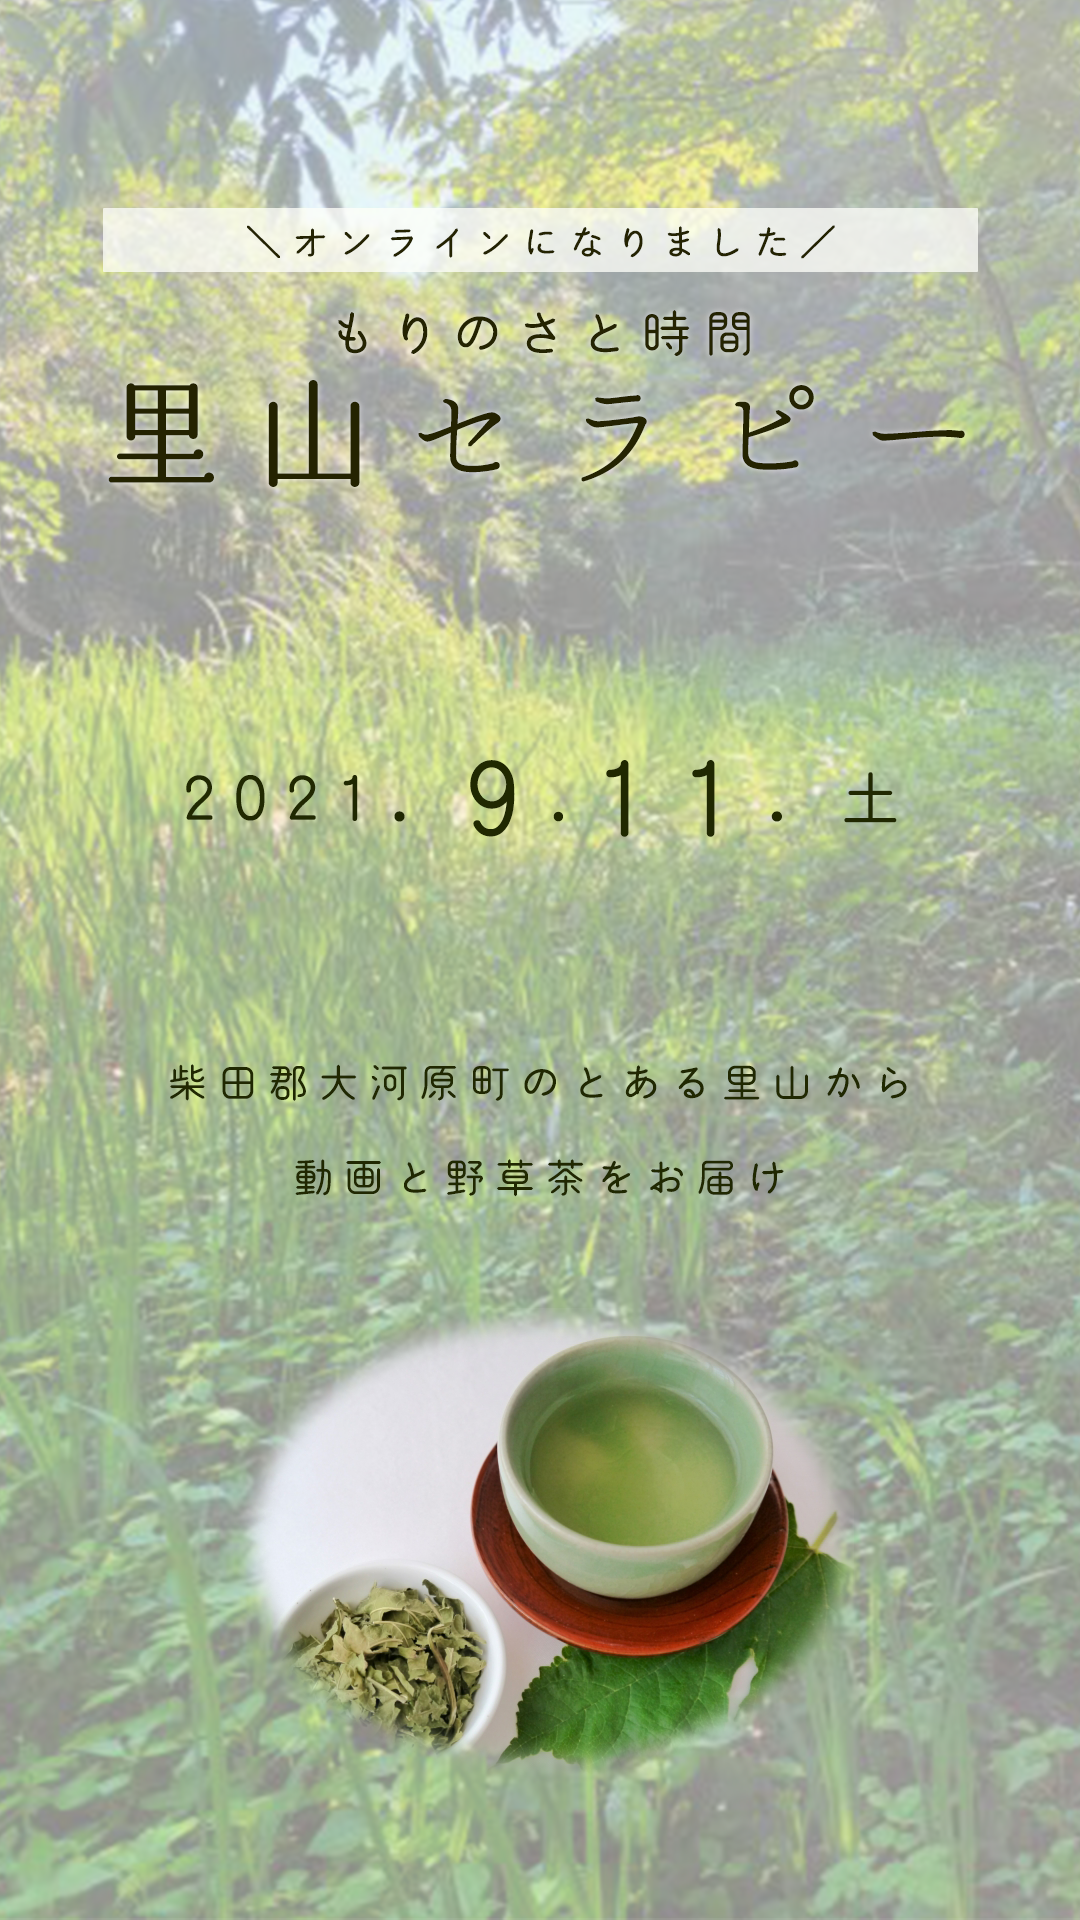 【終了しました】もりのさと時間　里山セラピー＊9月11日(土)大河原町のとある里山から「動画配信+野草茶をお届け」に変更になりました。